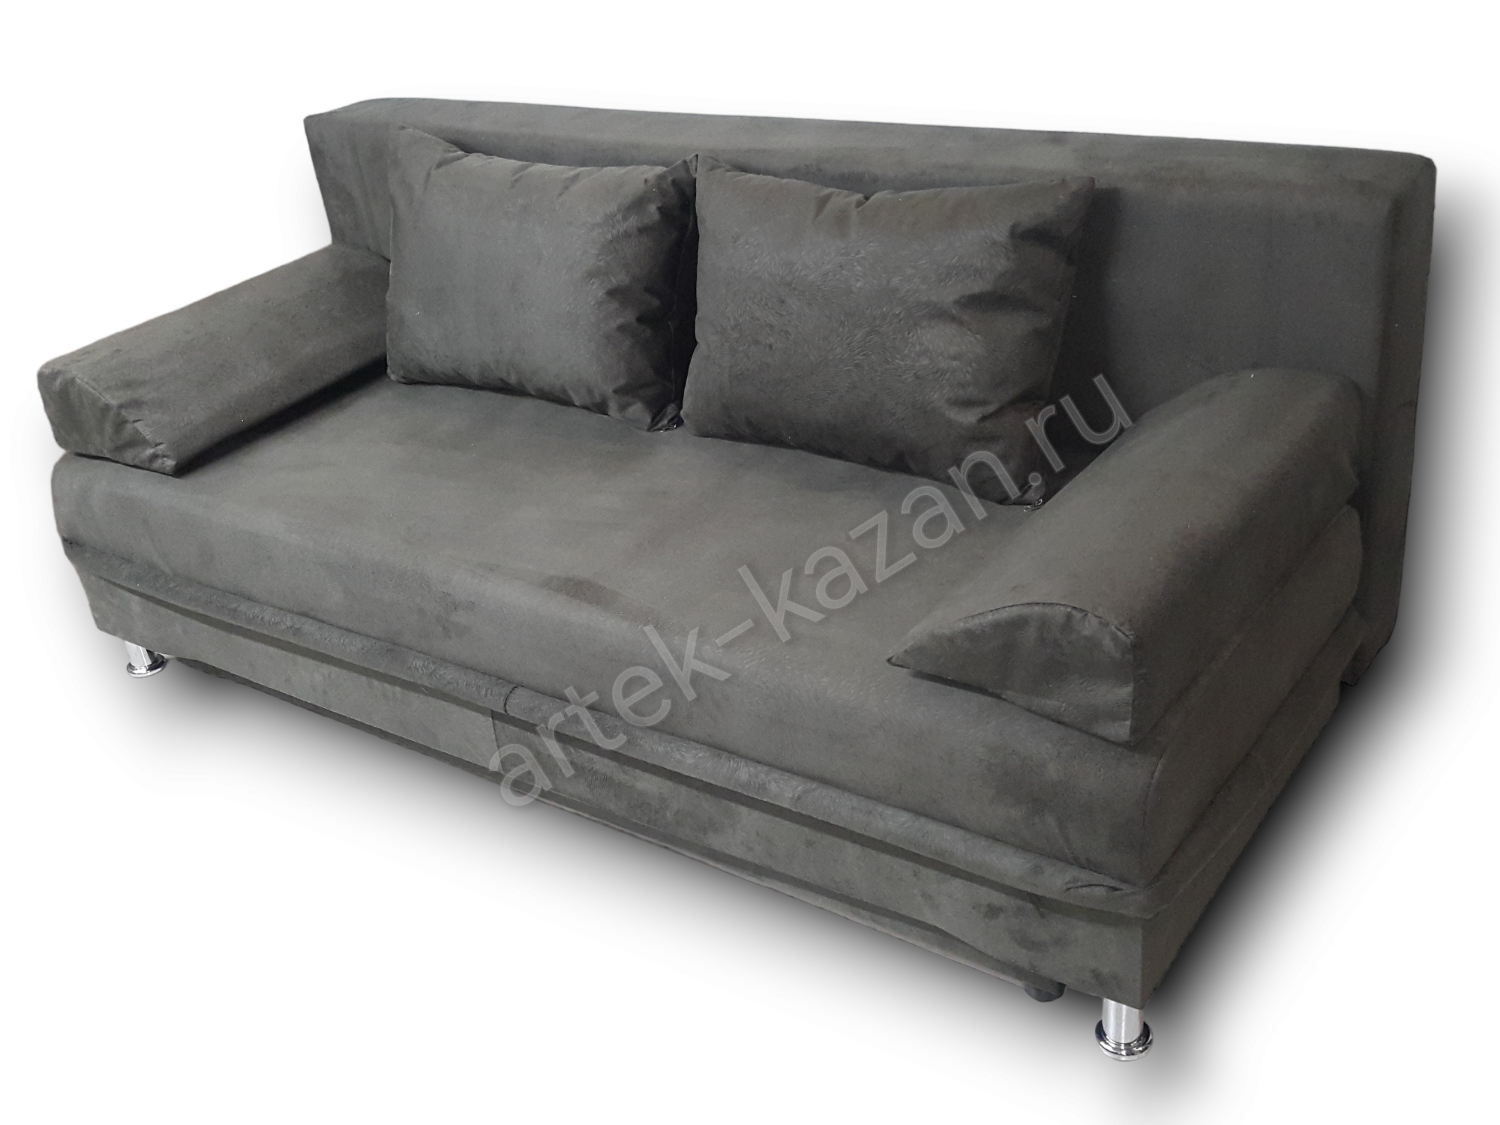 диван еврокнижка Эконом фото № 109. Купить недорогой диван по низкой цене от производителя можно у нас.